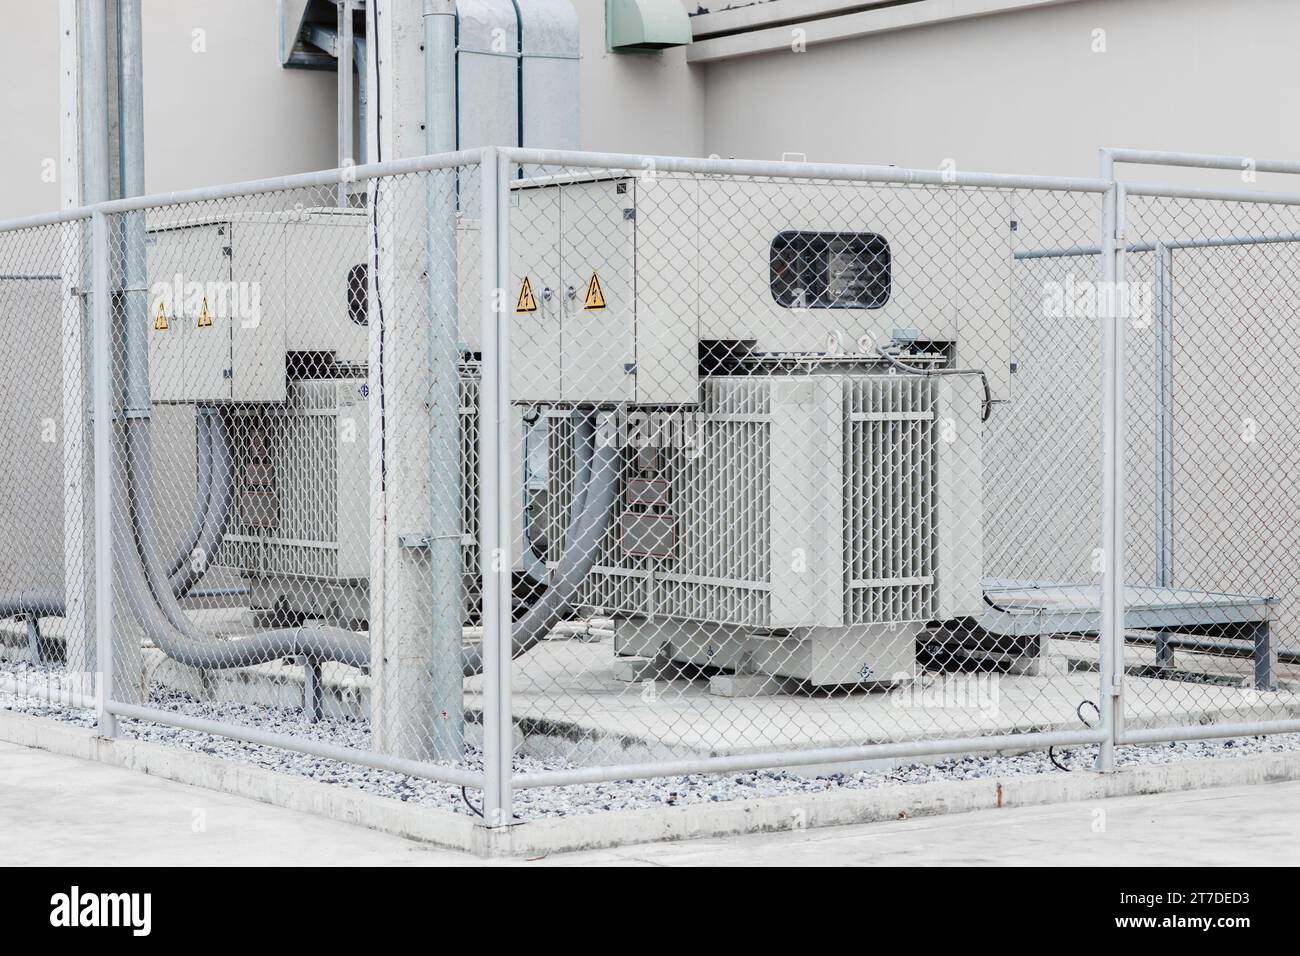 Transformateur d'électricité haute tension triphasé puissance électrique avec zone de protection de clôture de zone de sécurité dans le bâtiment de l'industrie. Banque D'Images